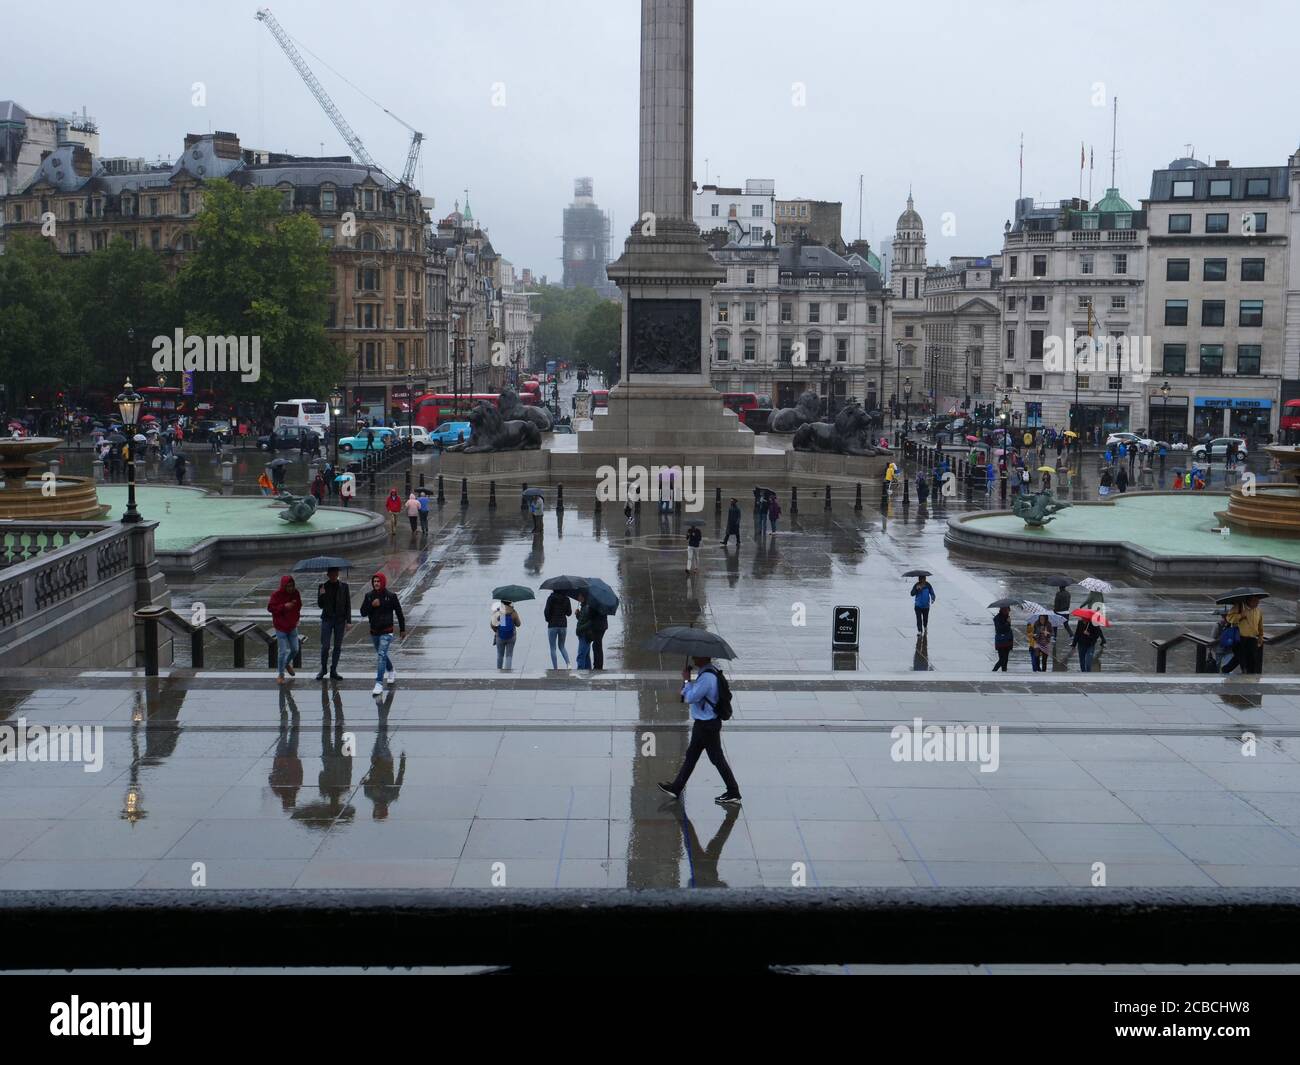 Vue générale des touristes vus marcher avec des parasols sur Trafalgar Square, Londres, un jour pluvieux en août. Banque D'Images